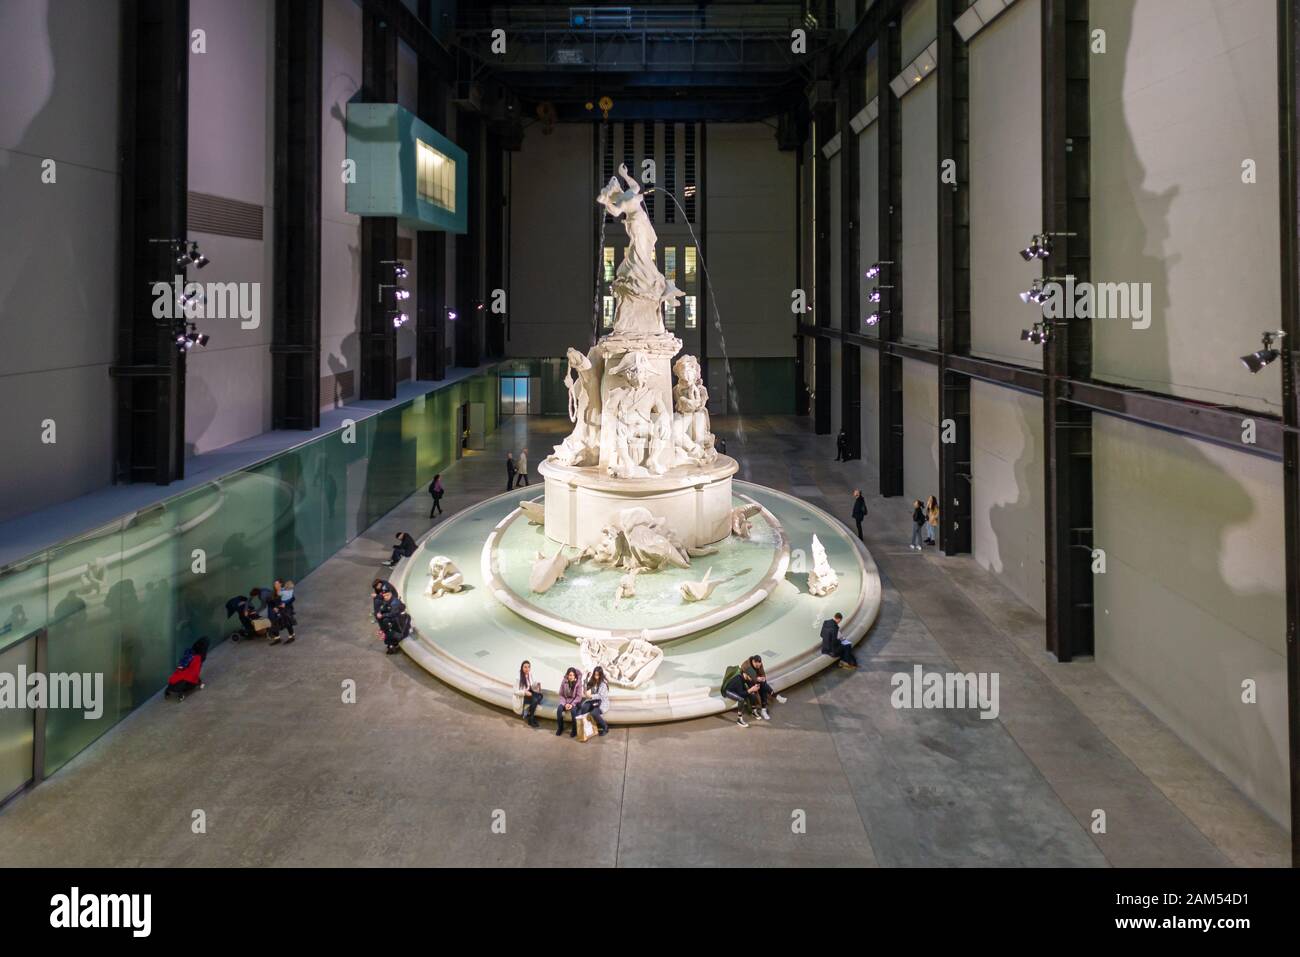 Fons Americanus, gigantische Brunnenskulptur von Kara Walker in der Turbinensaal der Tate Modern Art Gallery, London Stockfoto